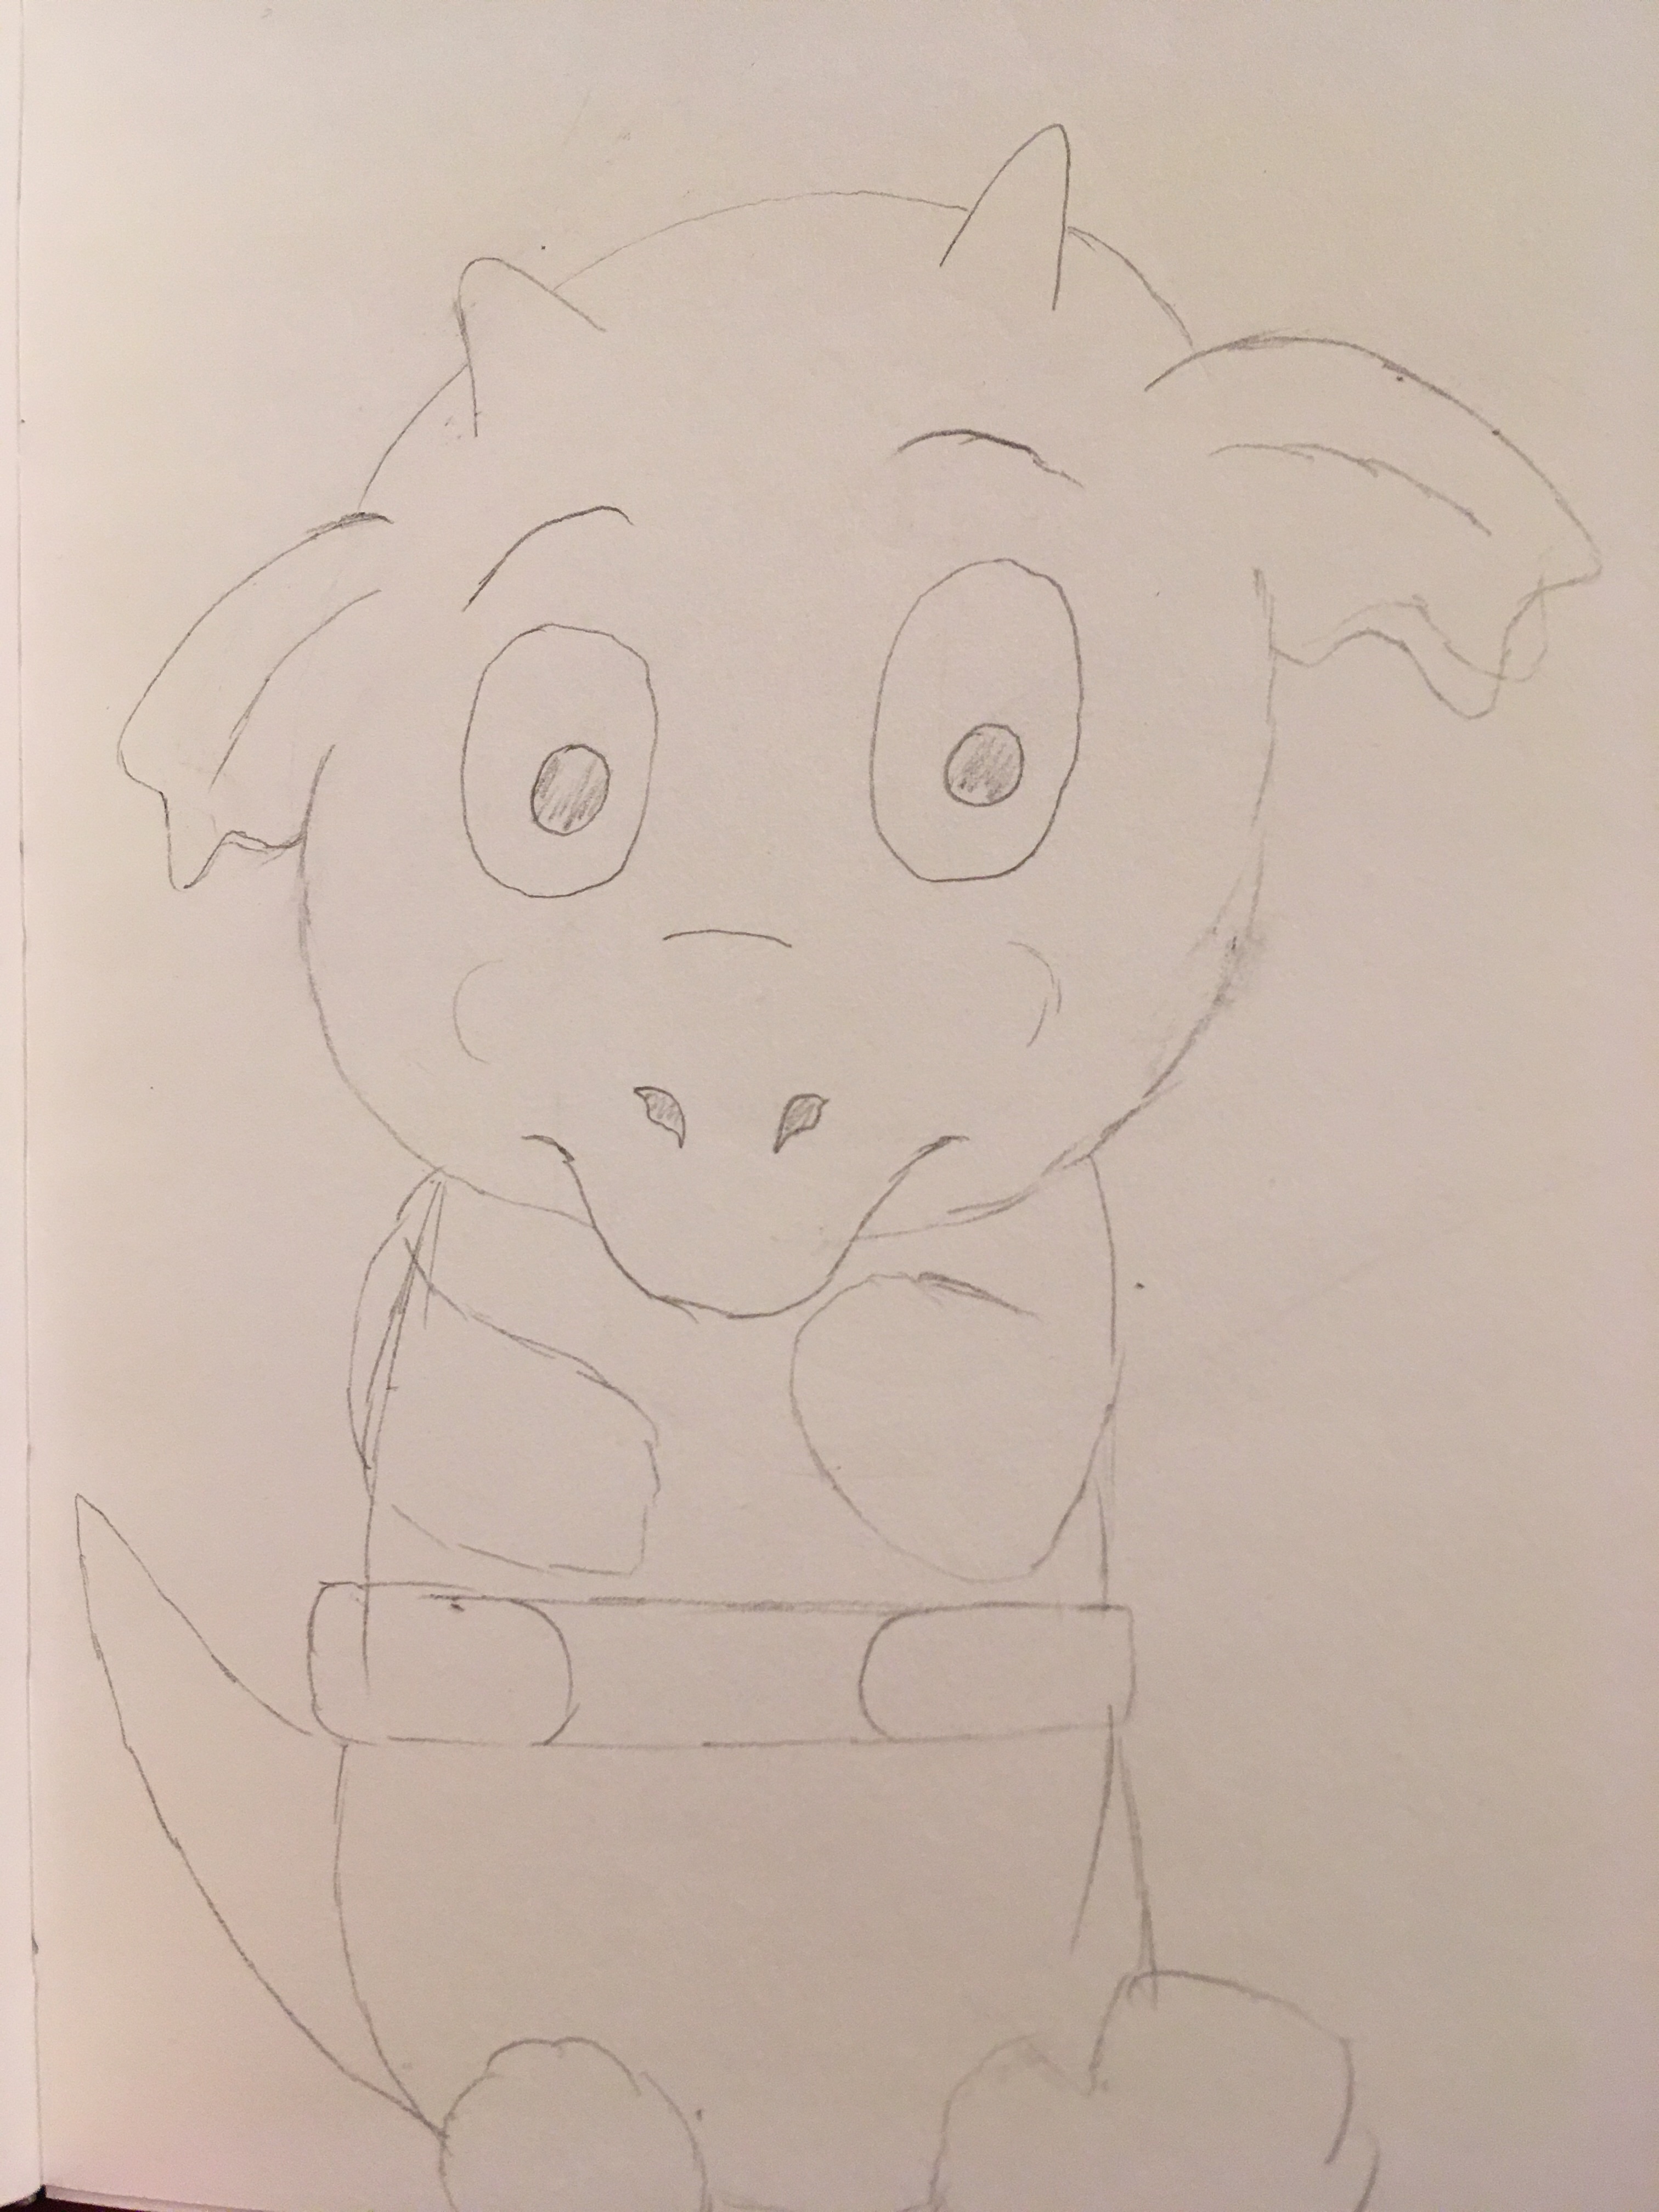 Baby pig dragon so cuuuuuute sketch in pencil